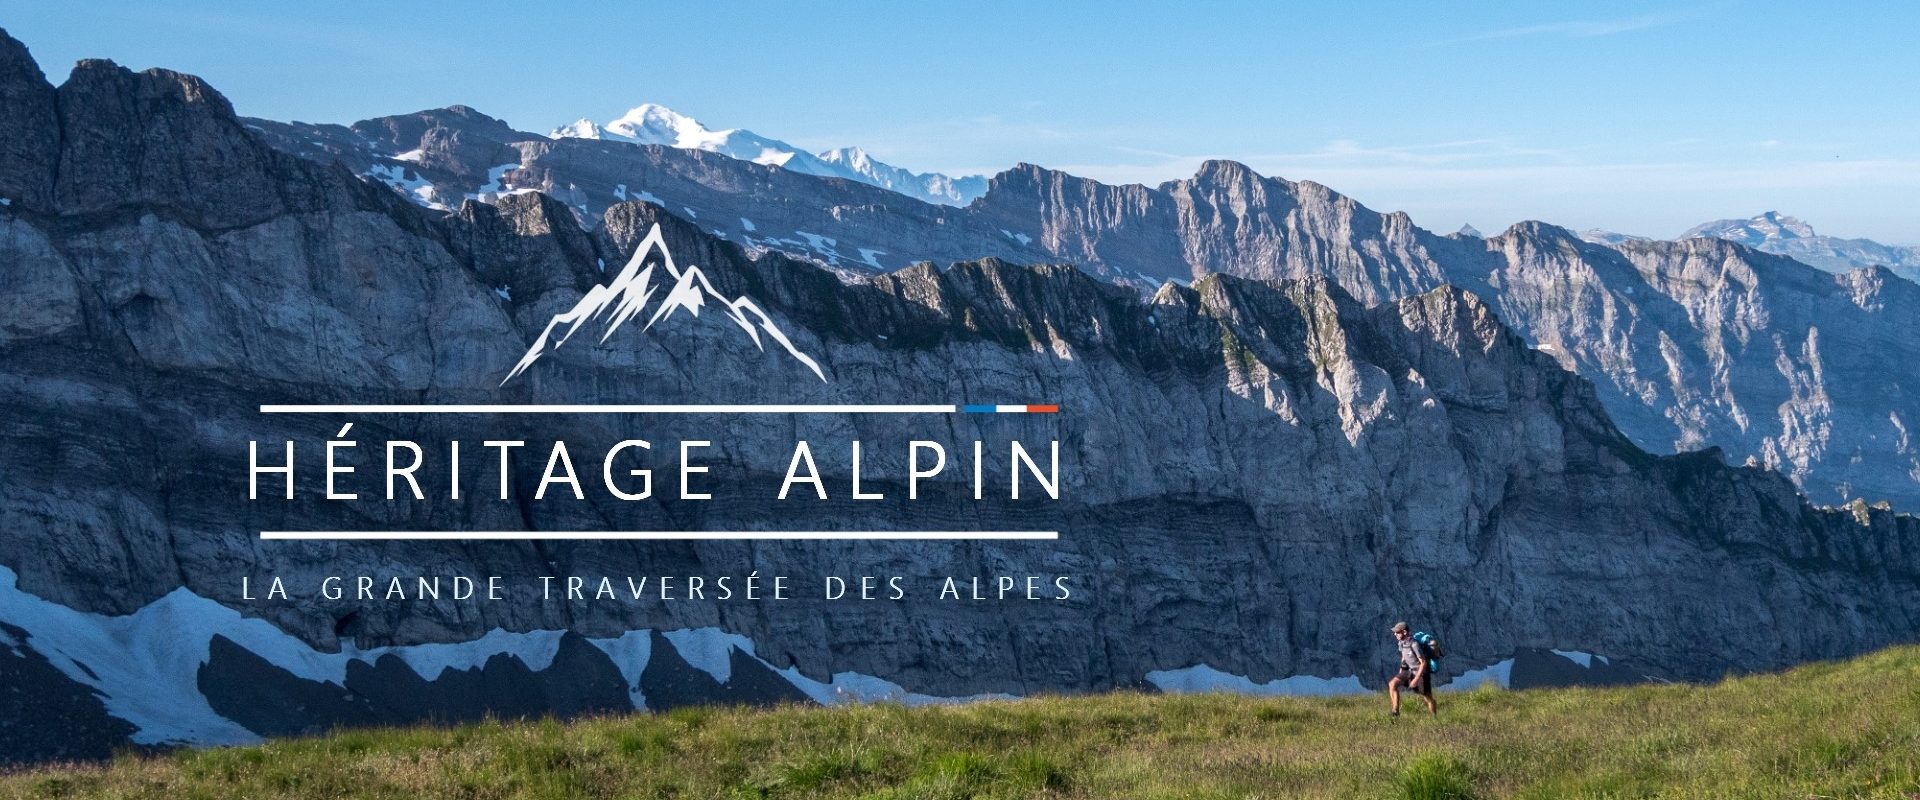 Héritage Alpin la Grande Traversée des Alpes à Pied en 25 jours